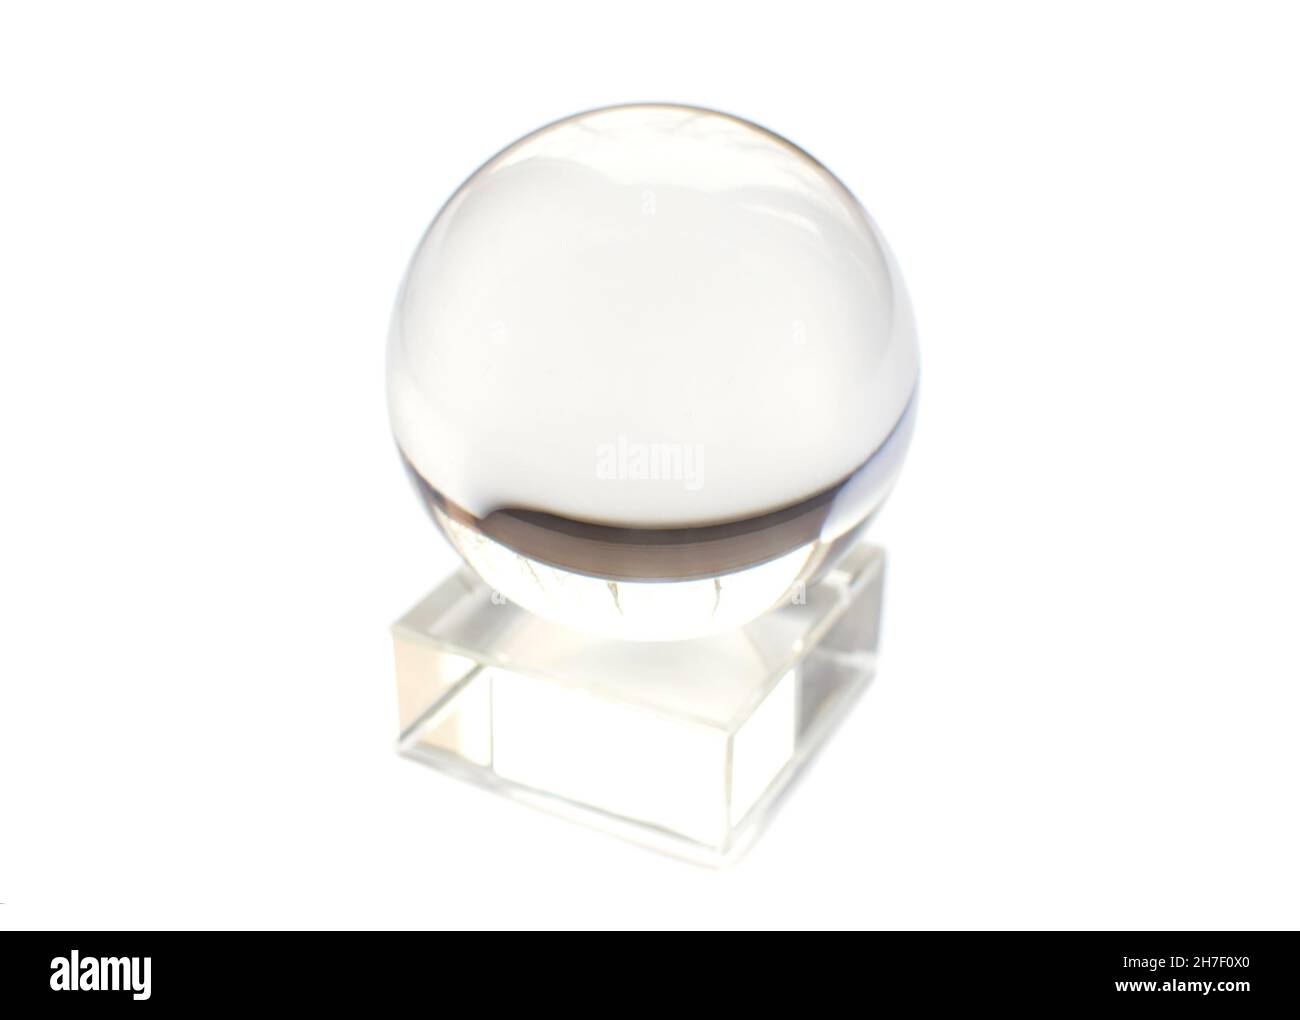 Ein Souvenir transparente Glaskugel auf weißem Hintergrund Stockfoto